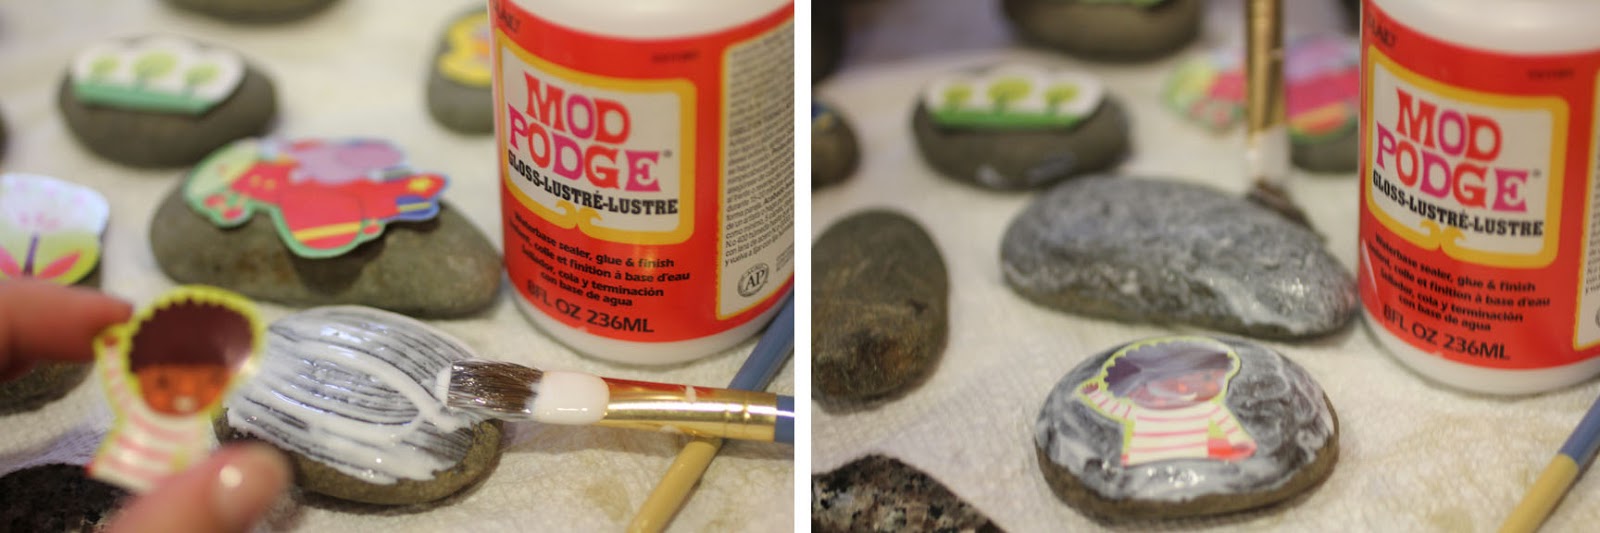 Brushstroke Mod Podge: Your Complete Guide! - Mod Podge Rocks